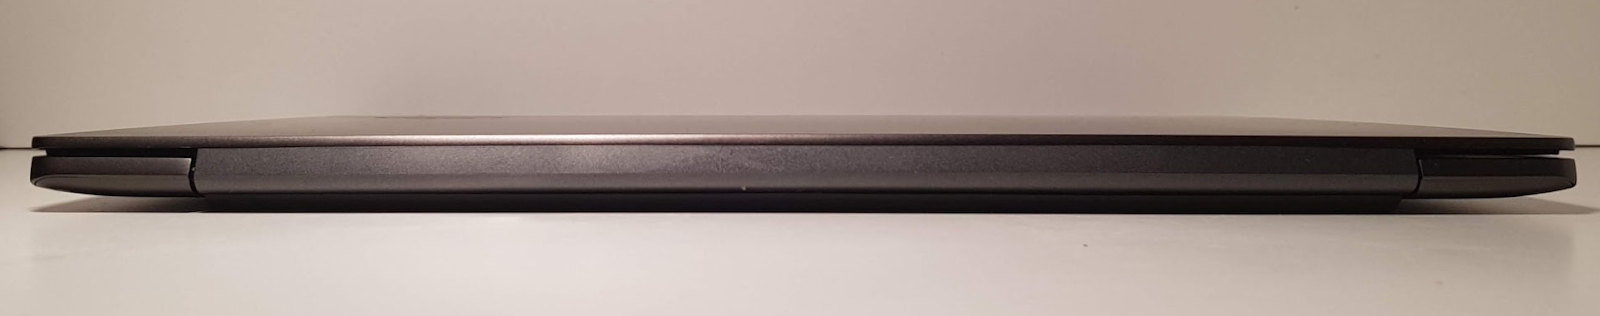 Обзор ноутбука Lenovo S730-13 (2018): мощное железо в стильном алюминиевом корпусе - 8